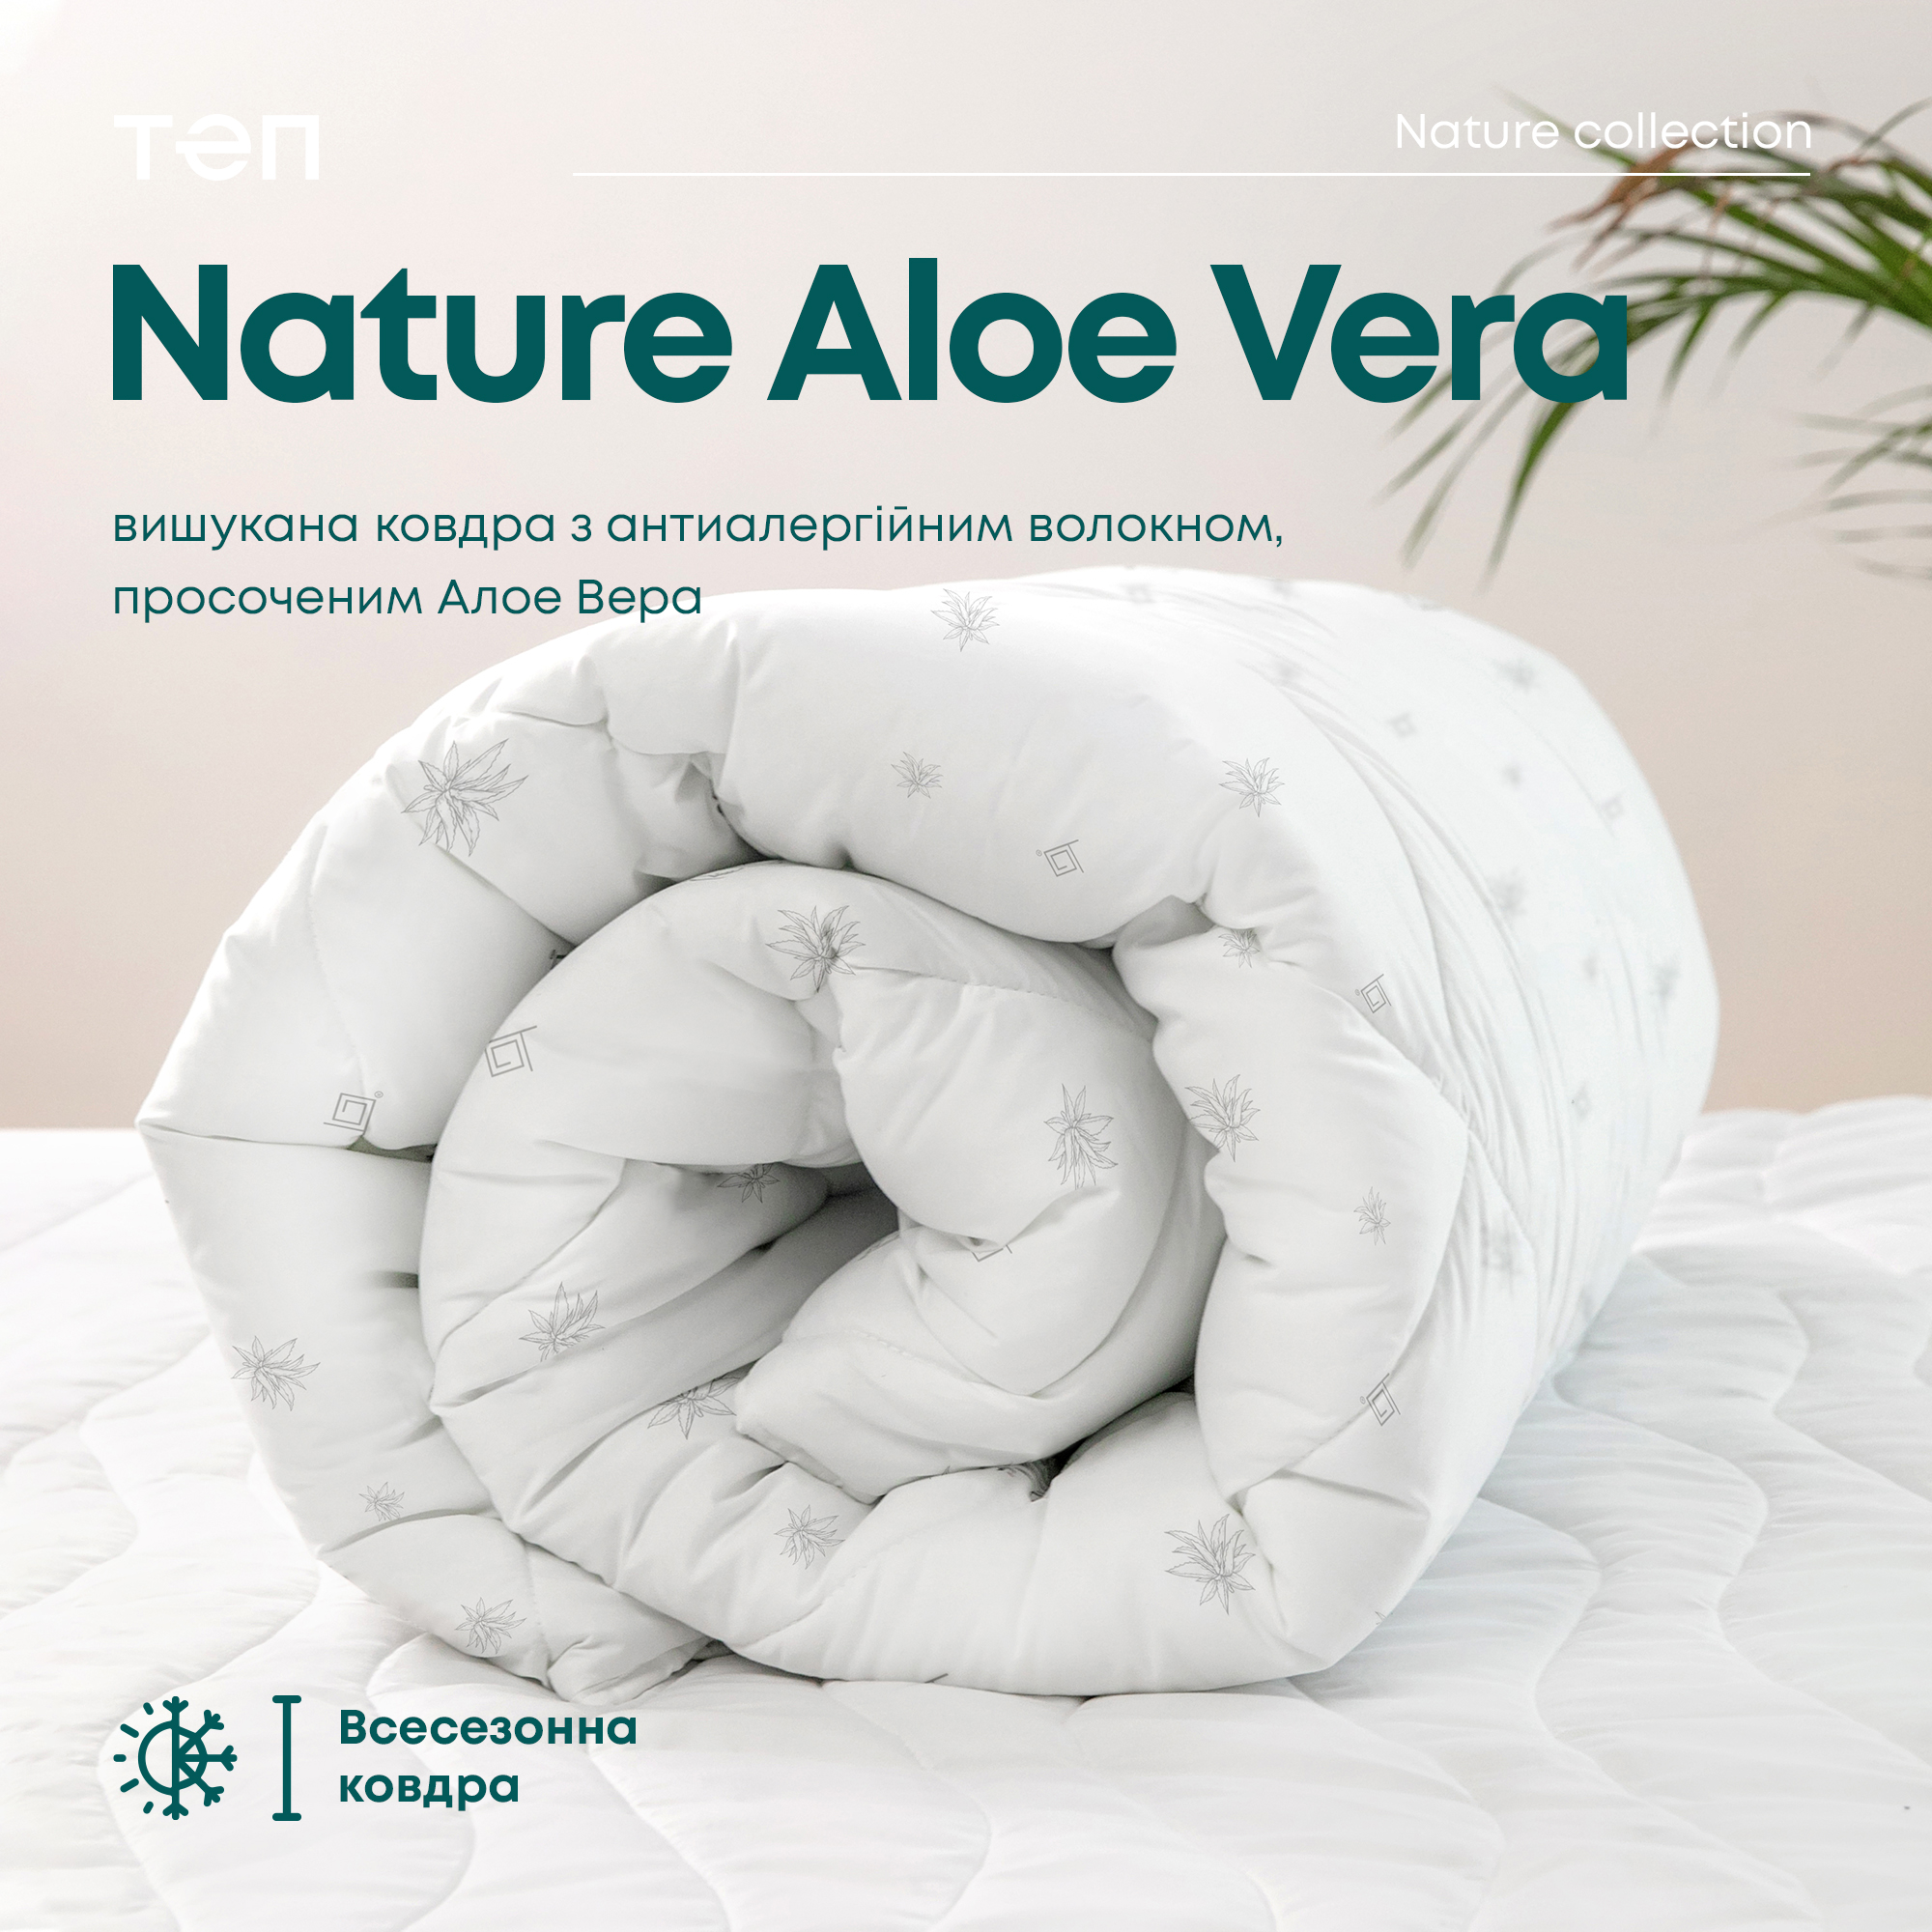 Одеяло ТЕП Membrana Print Aloe Vera Природа 200x210 белое (1-02571_00000) - фото 10